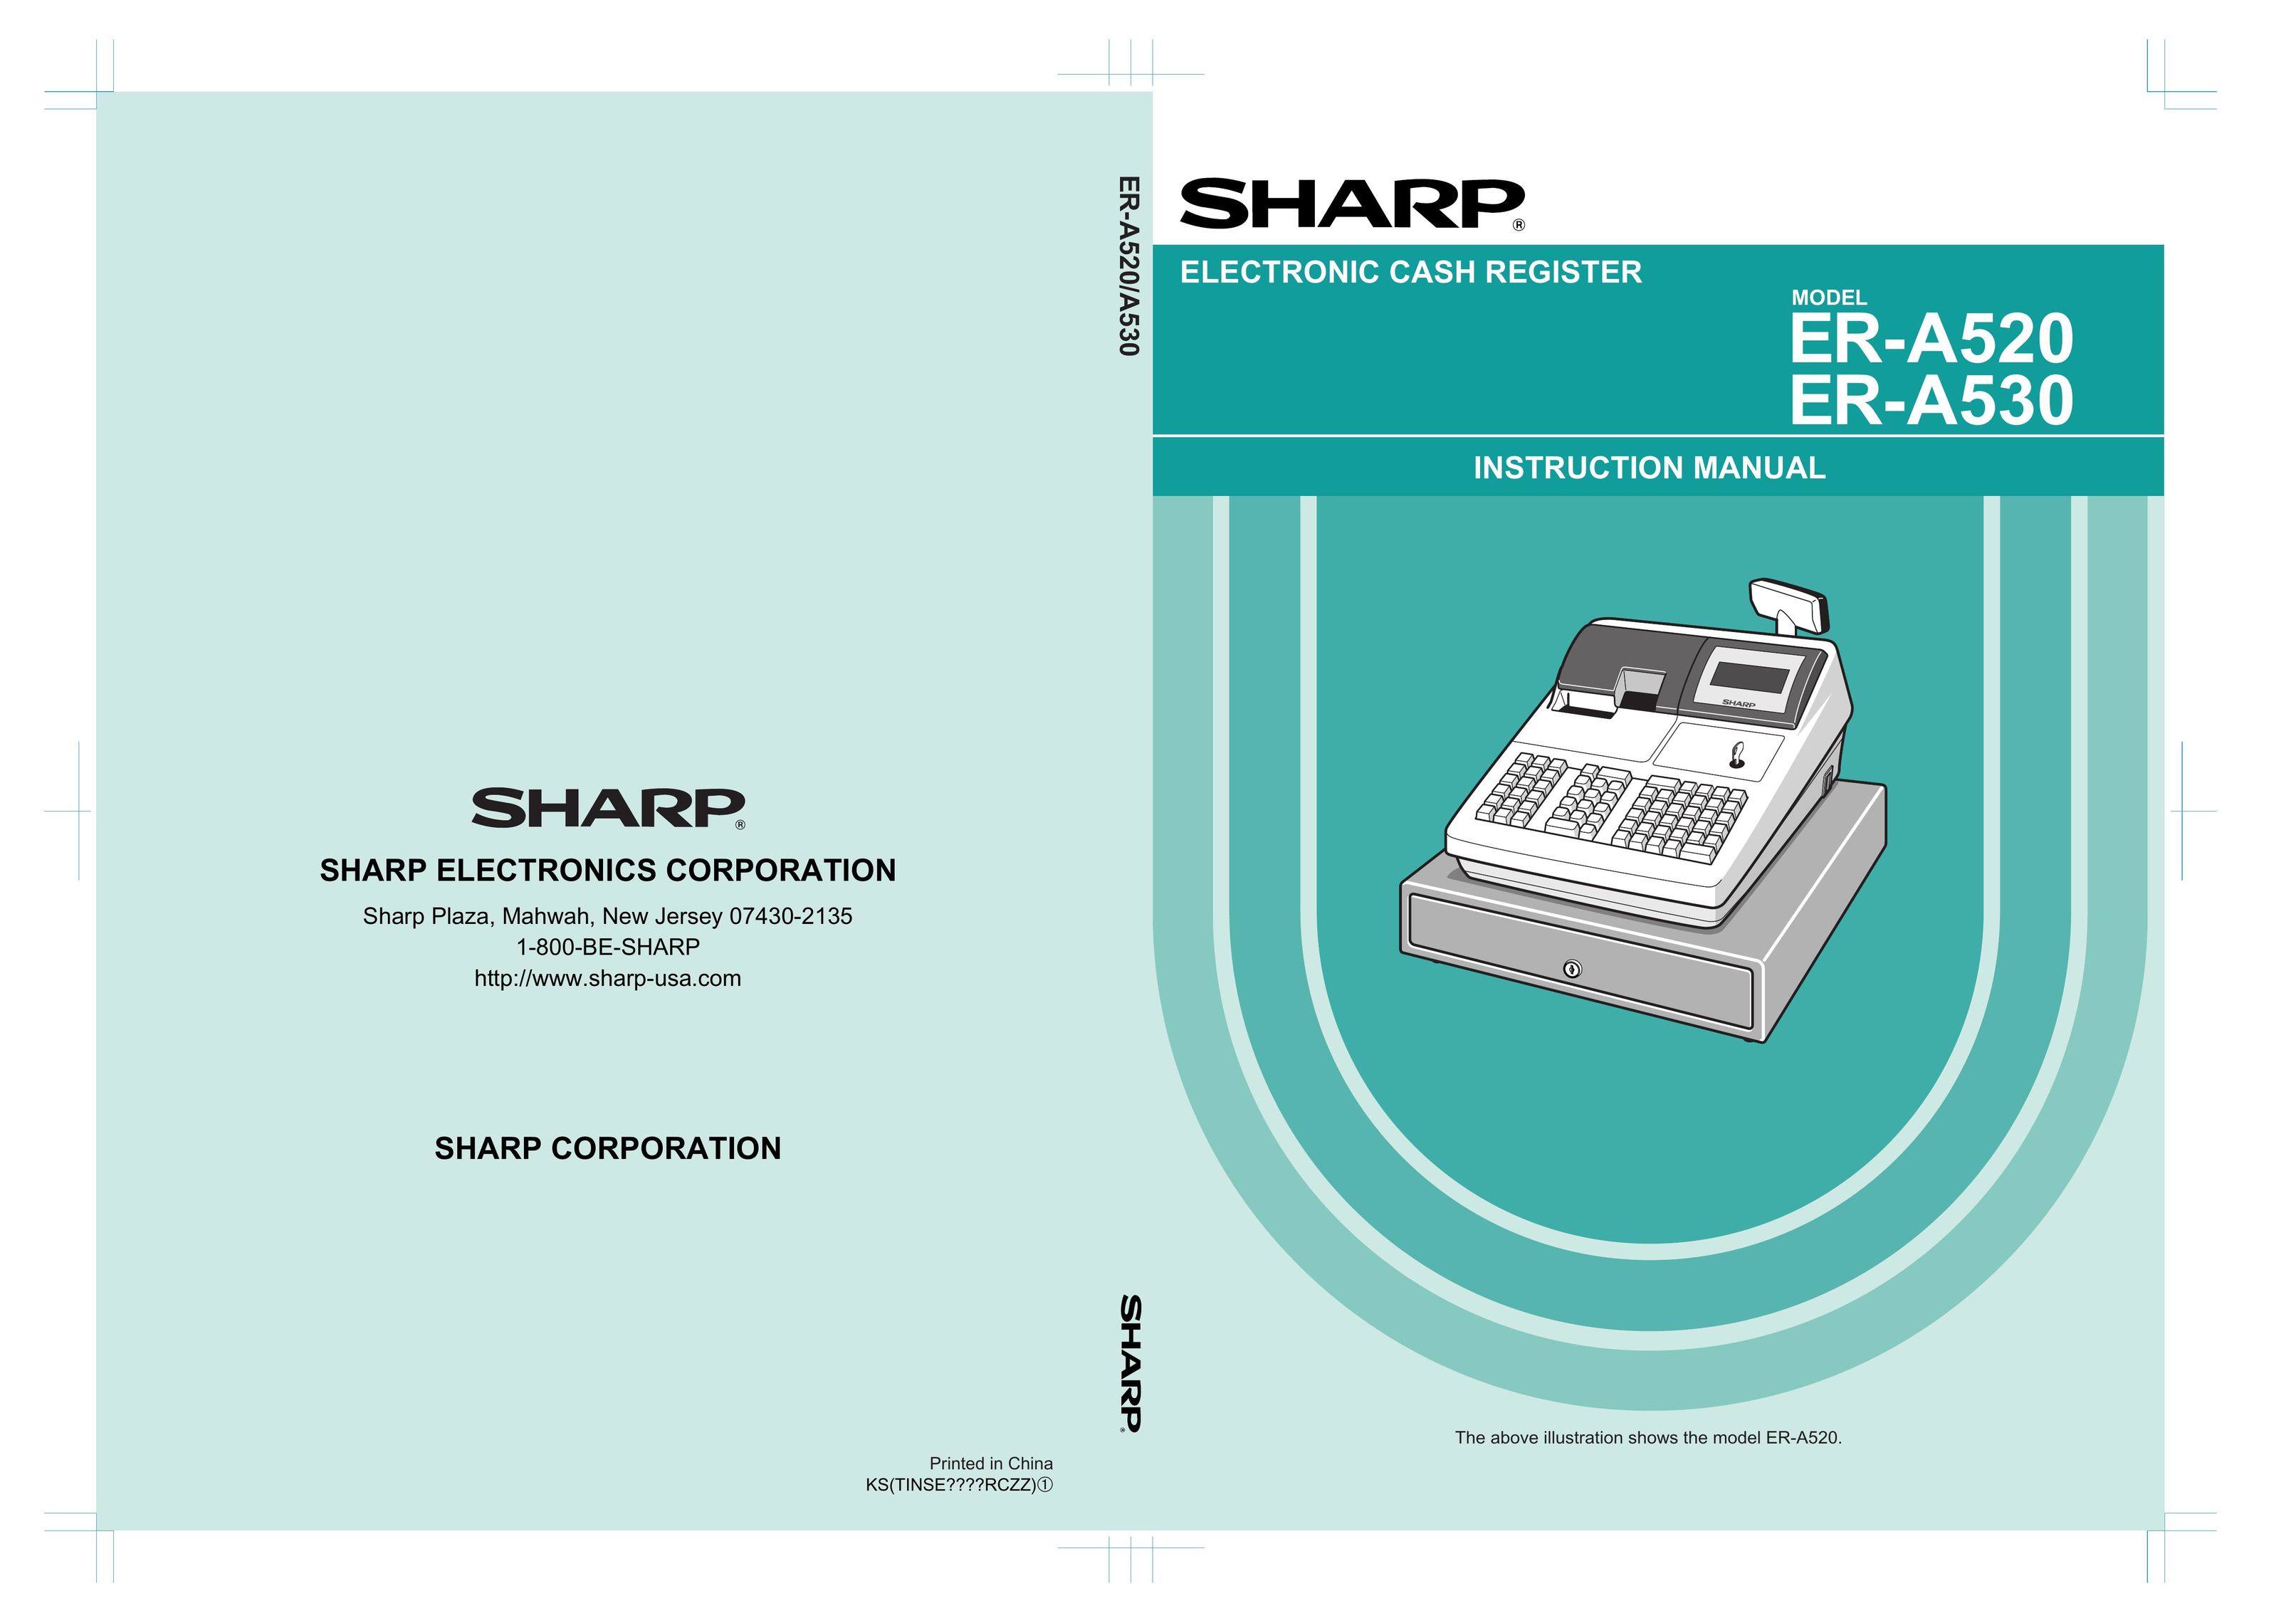 Sharp ER-A530 Cash Register User Manual